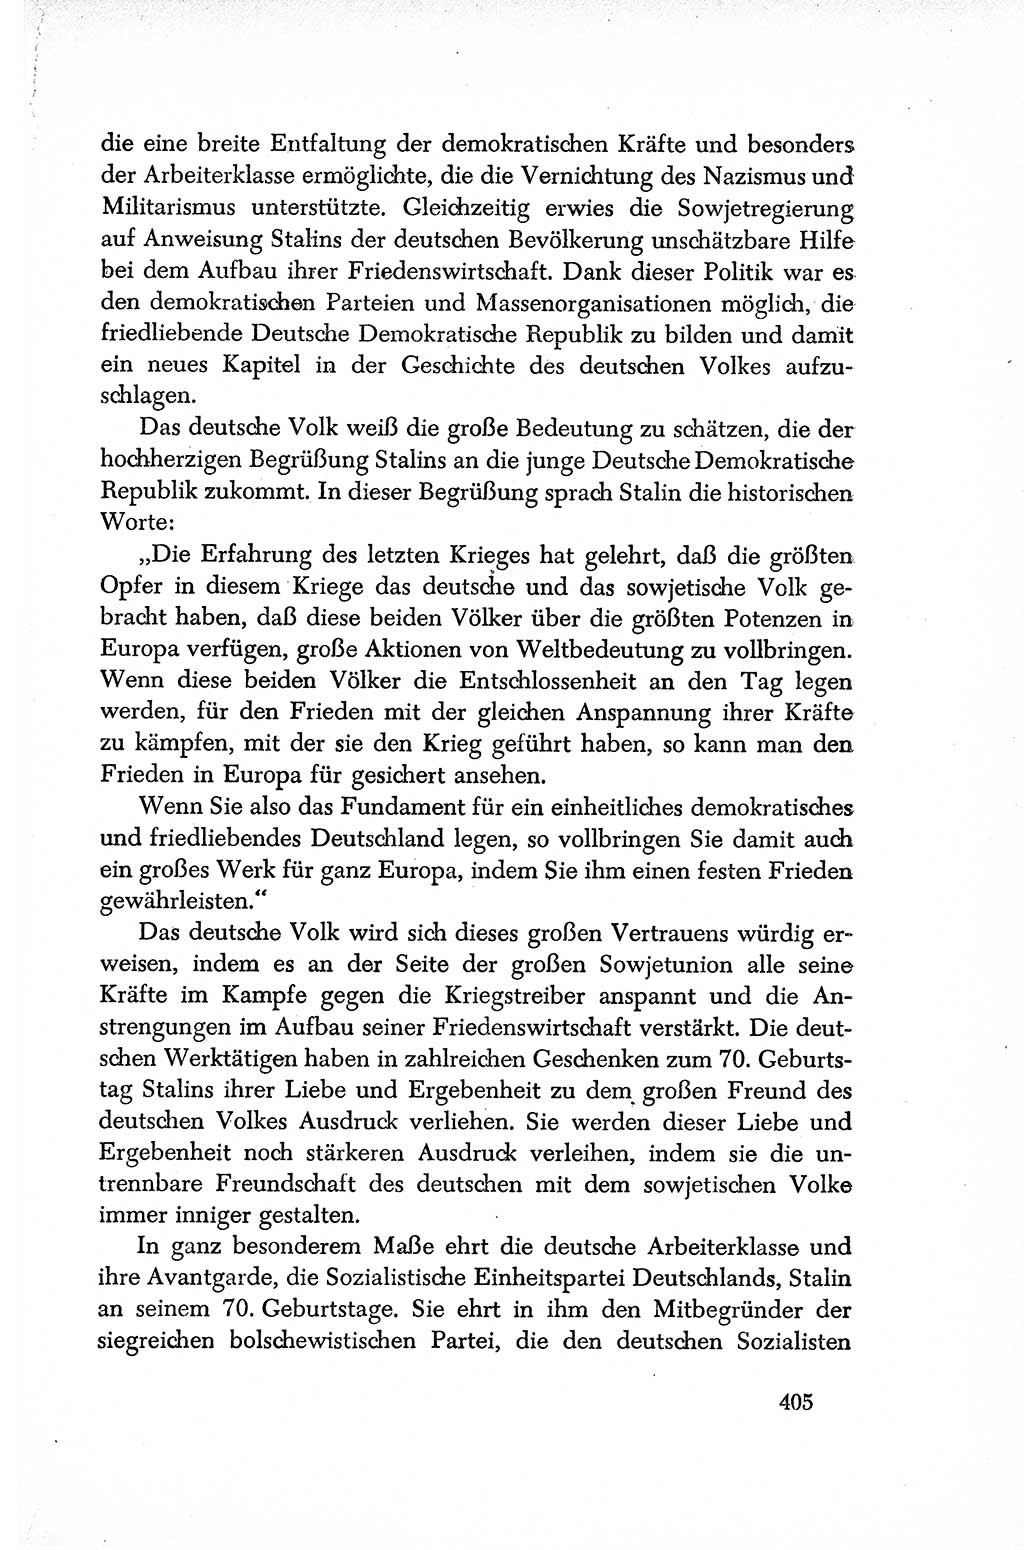 Dokumente der Sozialistischen Einheitspartei Deutschlands (SED) [Sowjetische Besatzungszone (SBZ) Deutschlands/Deutsche Demokratische Republik (DDR)] 1948-1950, Seite 405 (Dok. SED SBZ Dtl. DDR 1948-1950, S. 405)